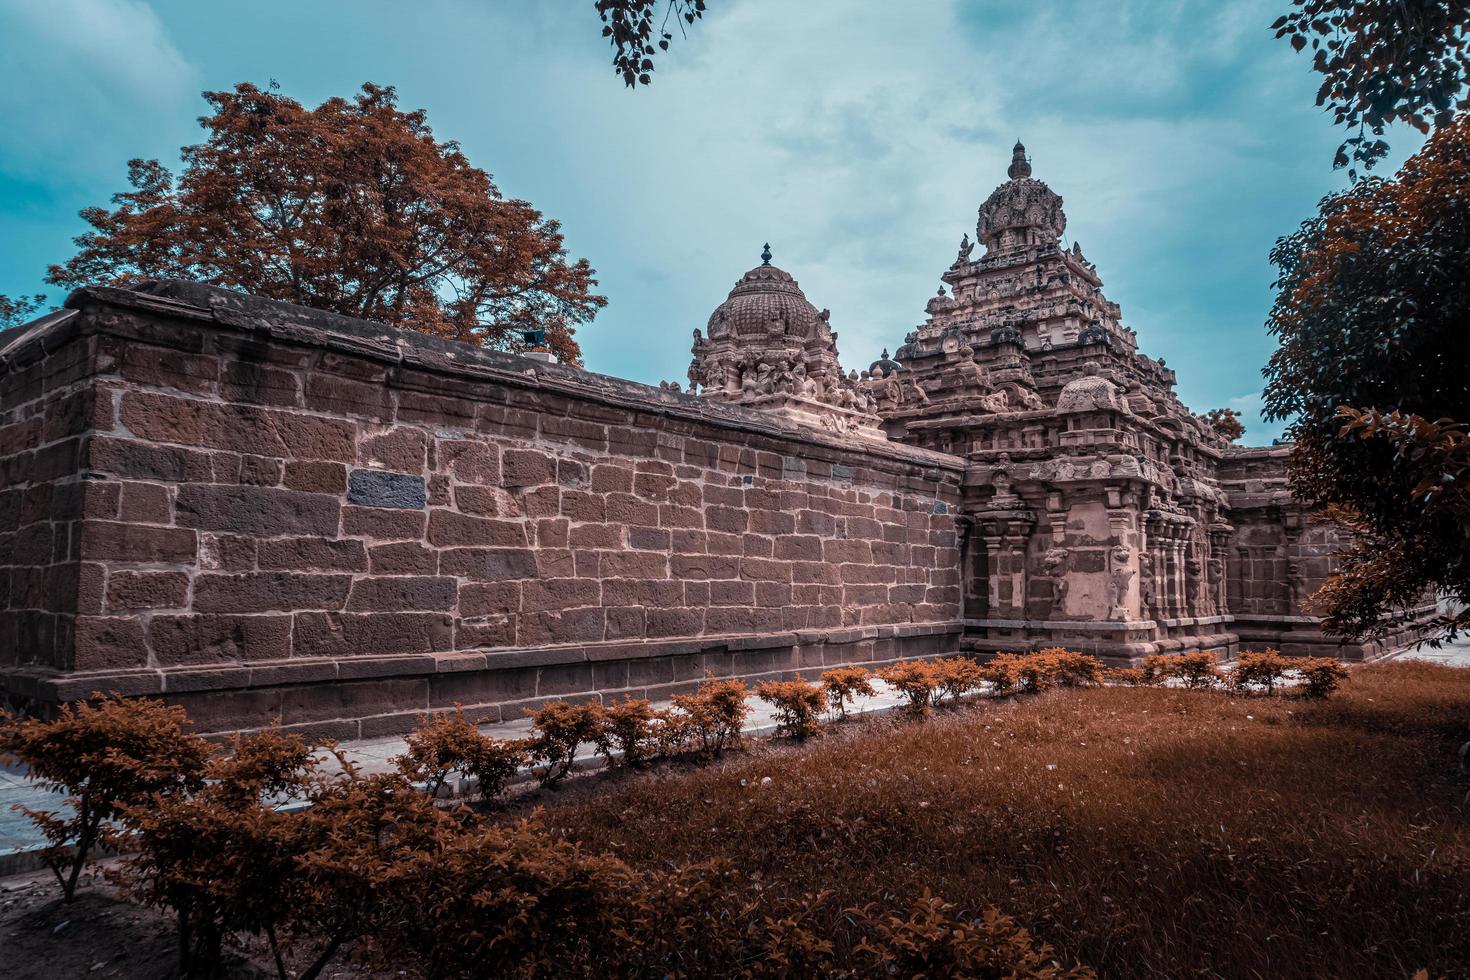 thiru parameswara vinnagaram ou vaikunta perumal temple é um templo dedicado a vishnu, localizado em kanchipuram, no sul do estado indiano de tamil nadu - um dos melhores sítios arqueológicos da índia foto